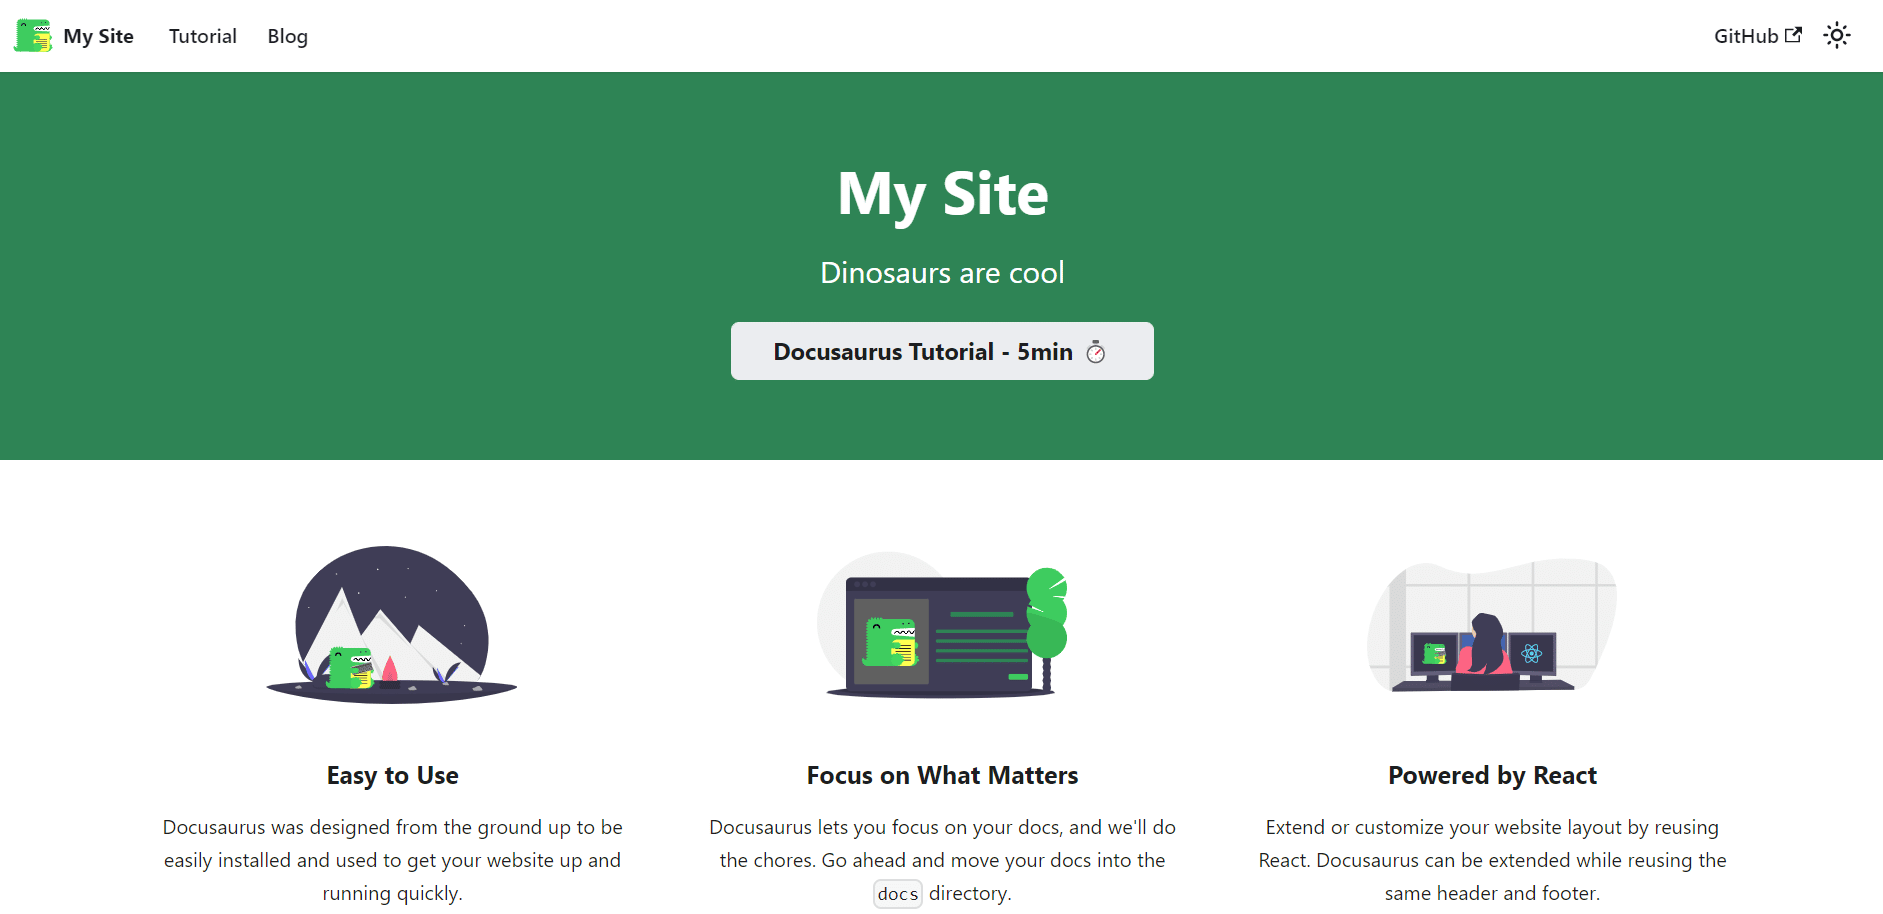 Docusaurus-Standardseite My Site nach erfolgreicher Installation